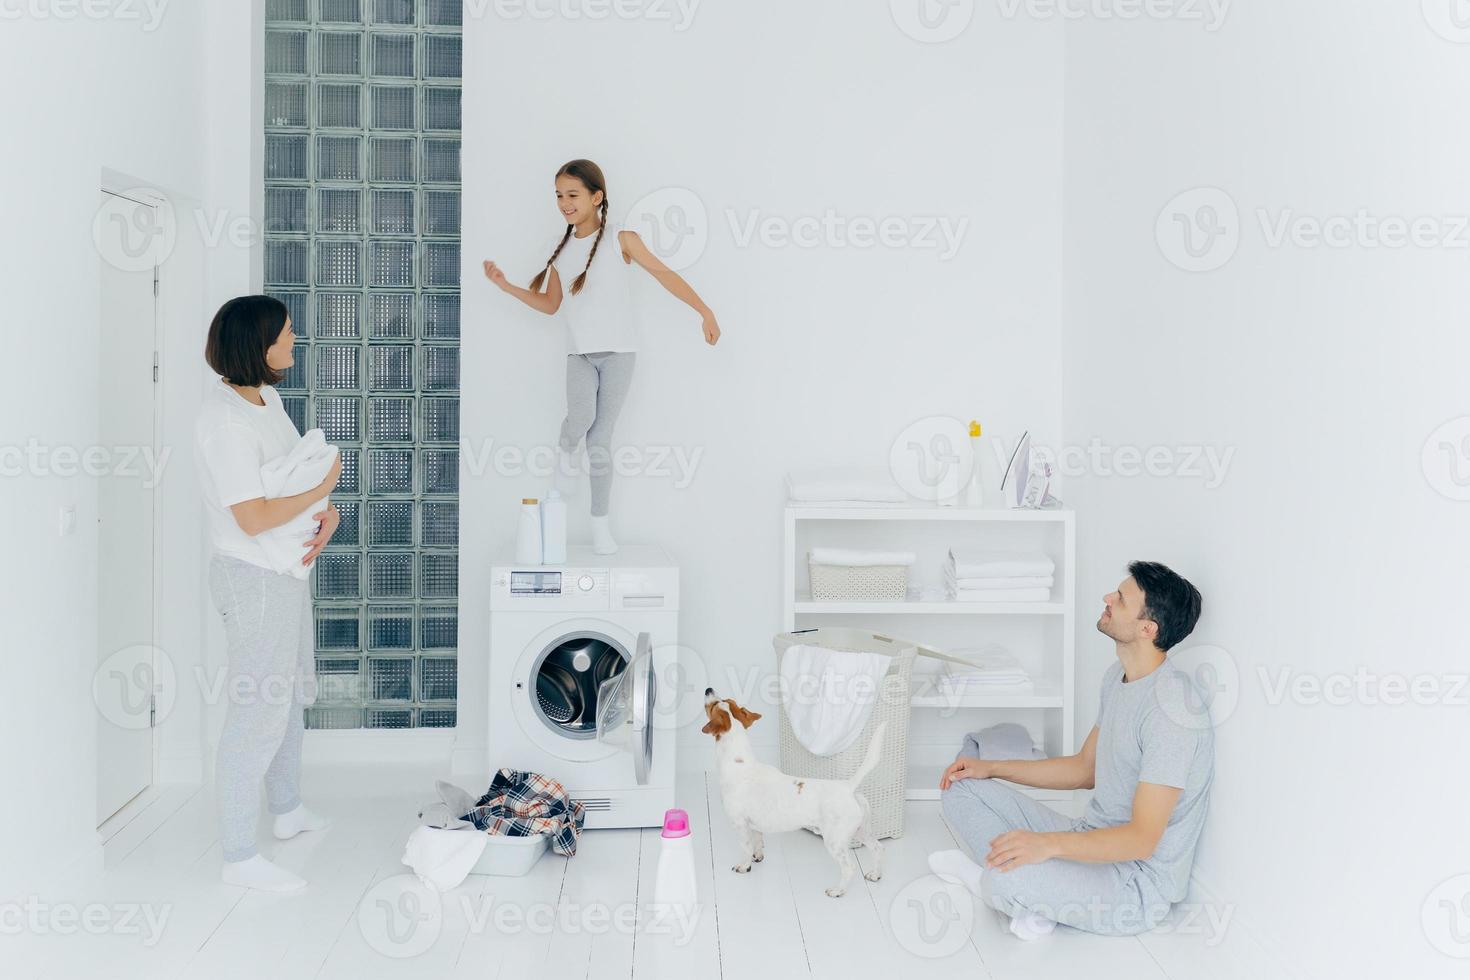 la familia feliz lava la ropa en casa, el padre se sienta en el suelo en posición de loto, la madre se para con una toalla blanca, mira al niño que baila alegremente en la lavadora, el perro pedigrí cerca. tareas del hogar foto